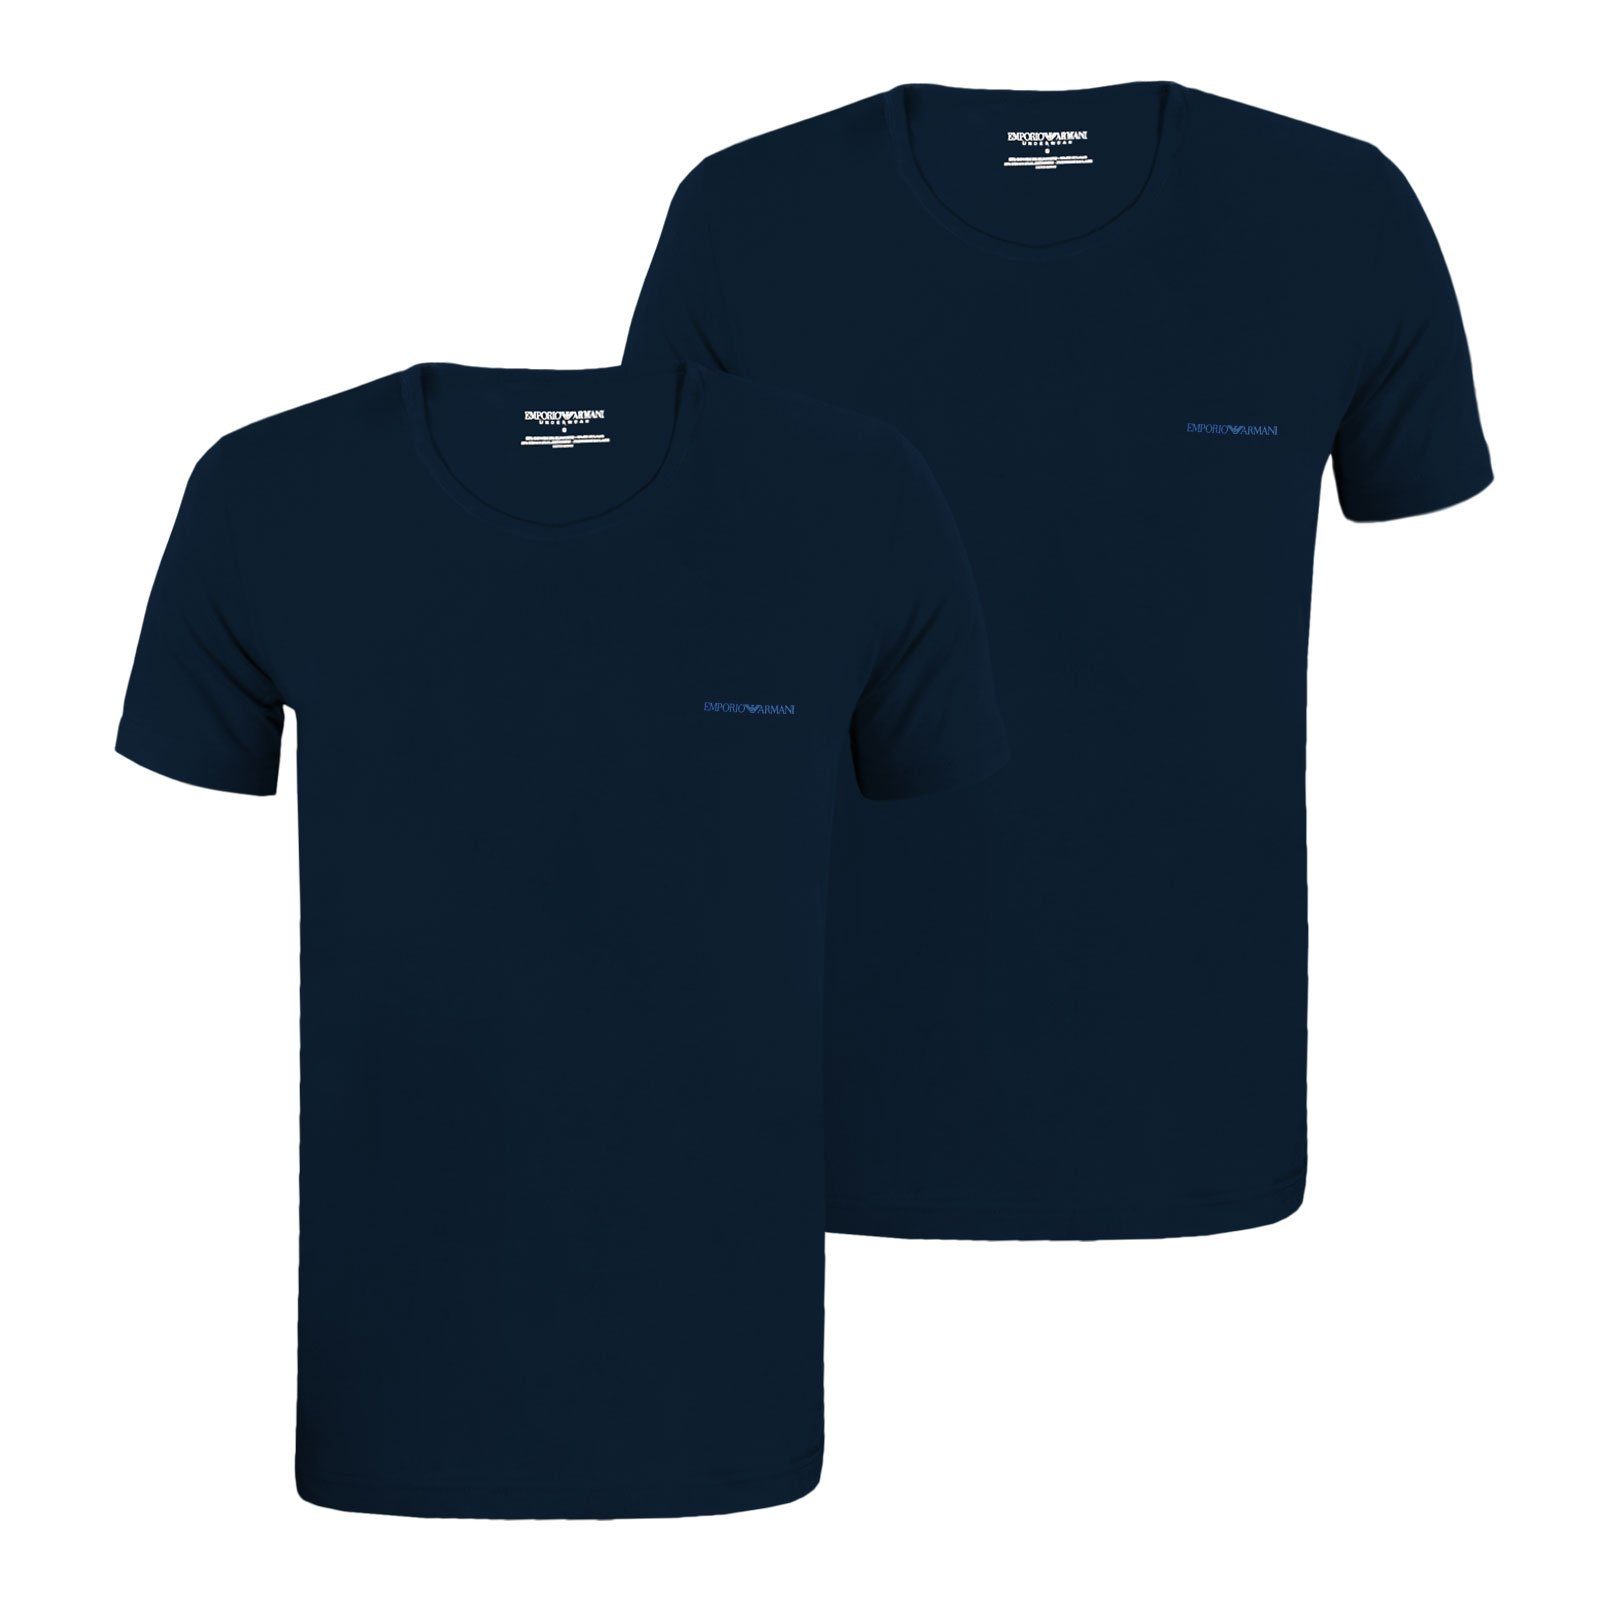 27435 T-Shirt T-Shirt auf mit marine Logo marine Emporio / Crew der Neck Stretch Brust Armani Cotton